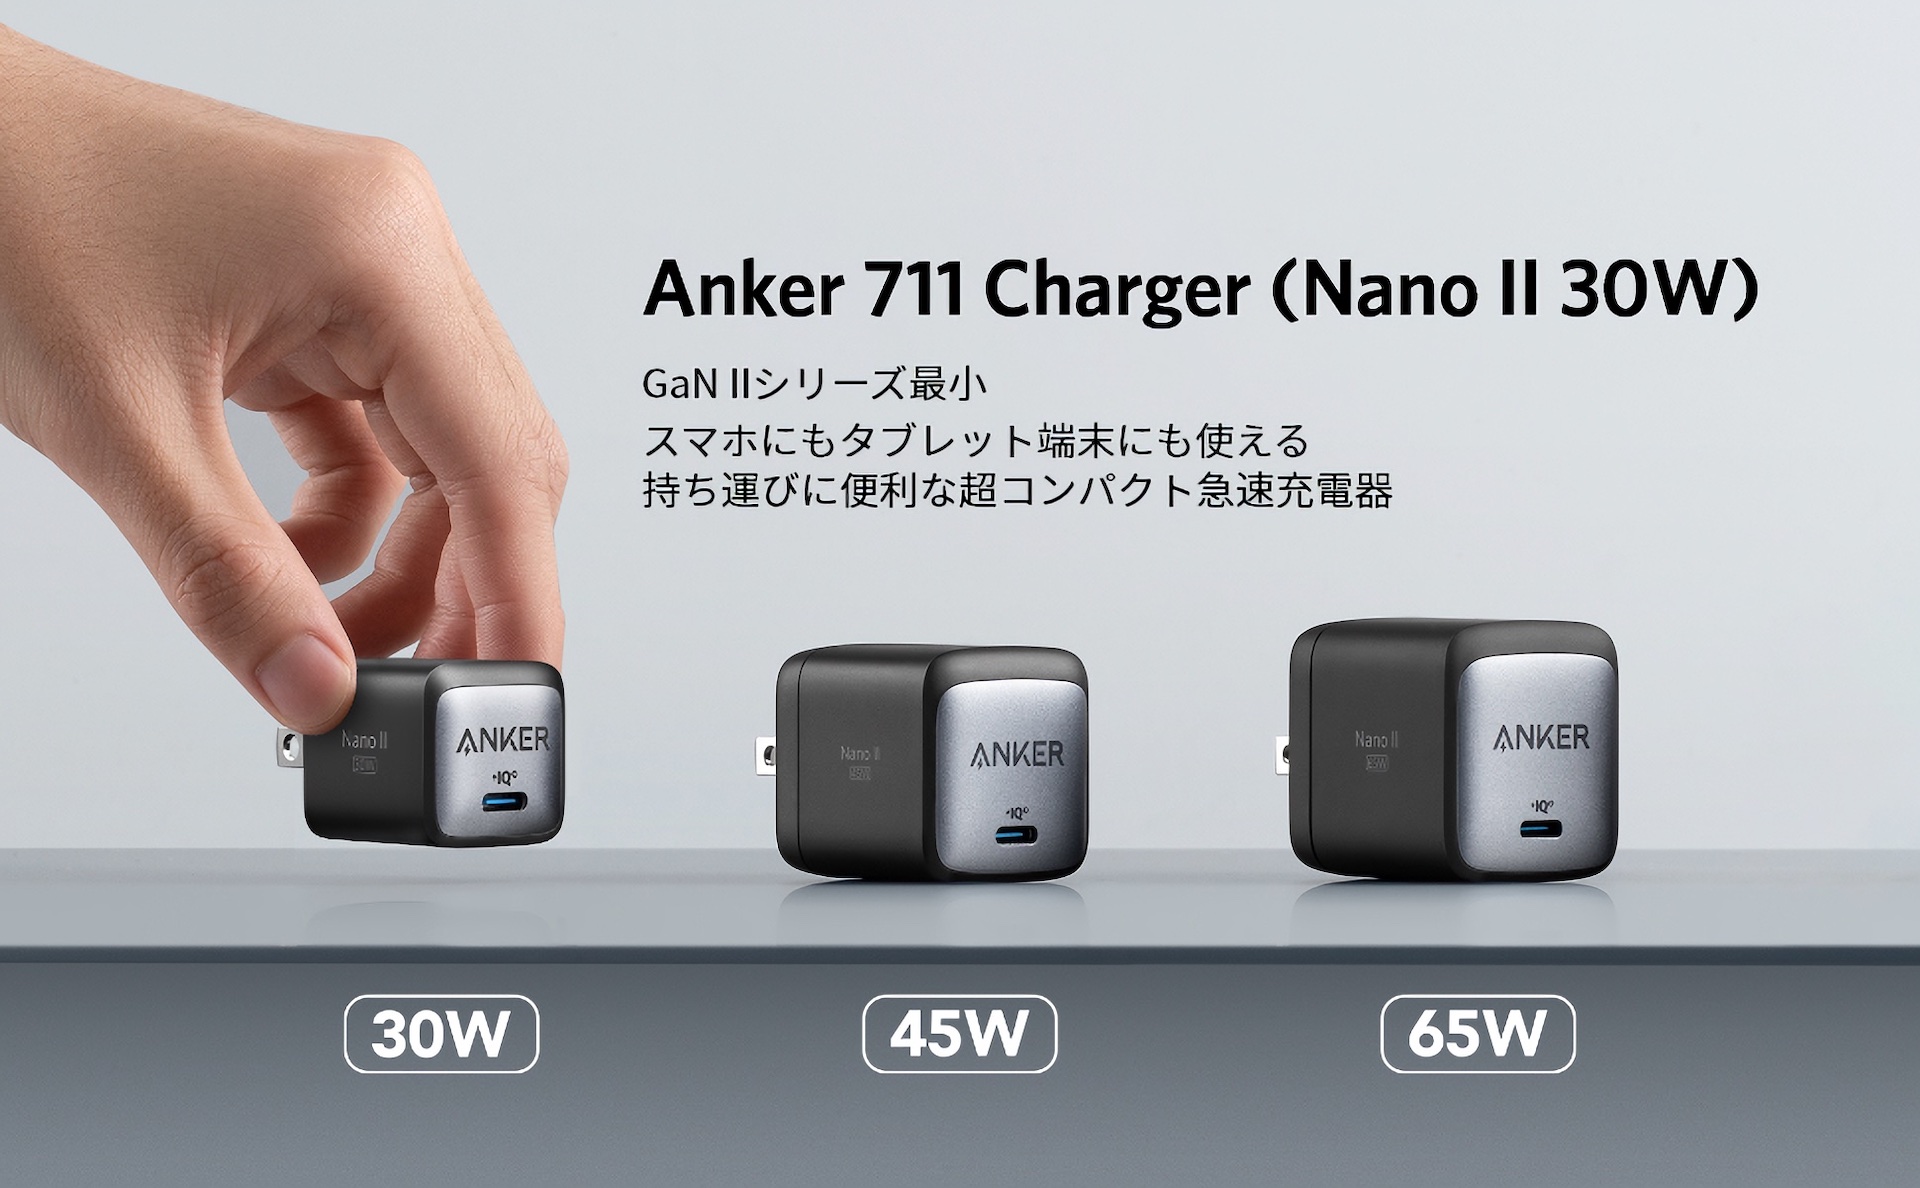 Anker 711 Charger Nano II 30W